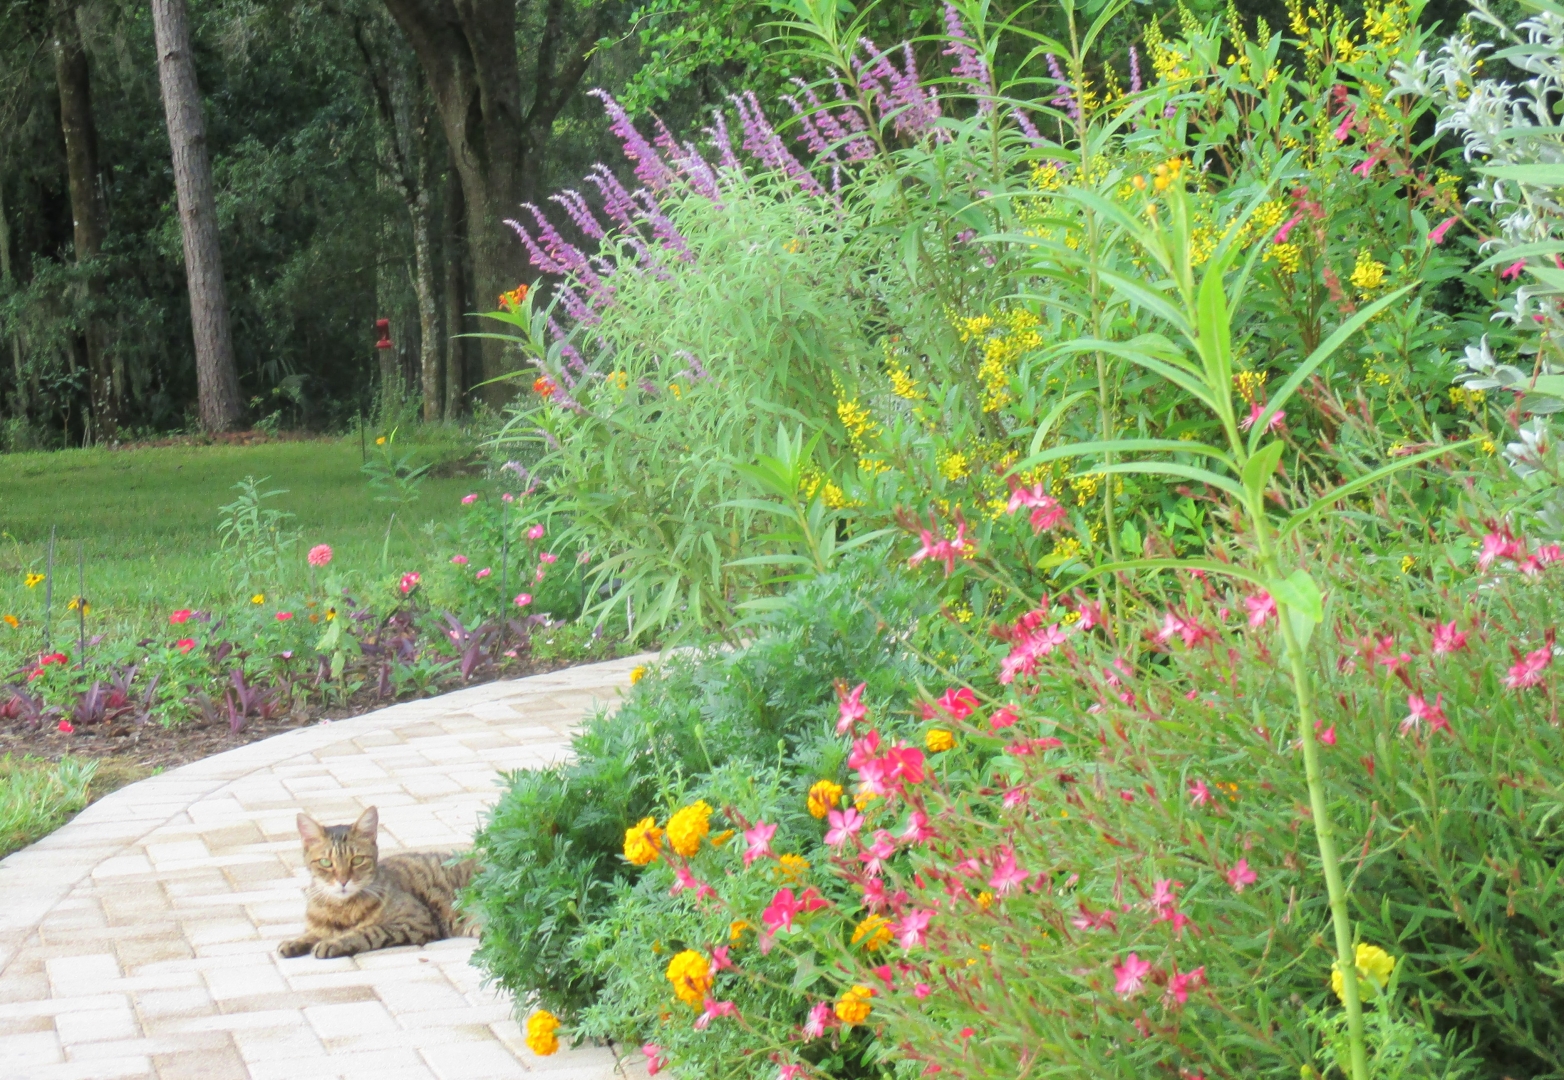 Cat in deer resistant flower garden